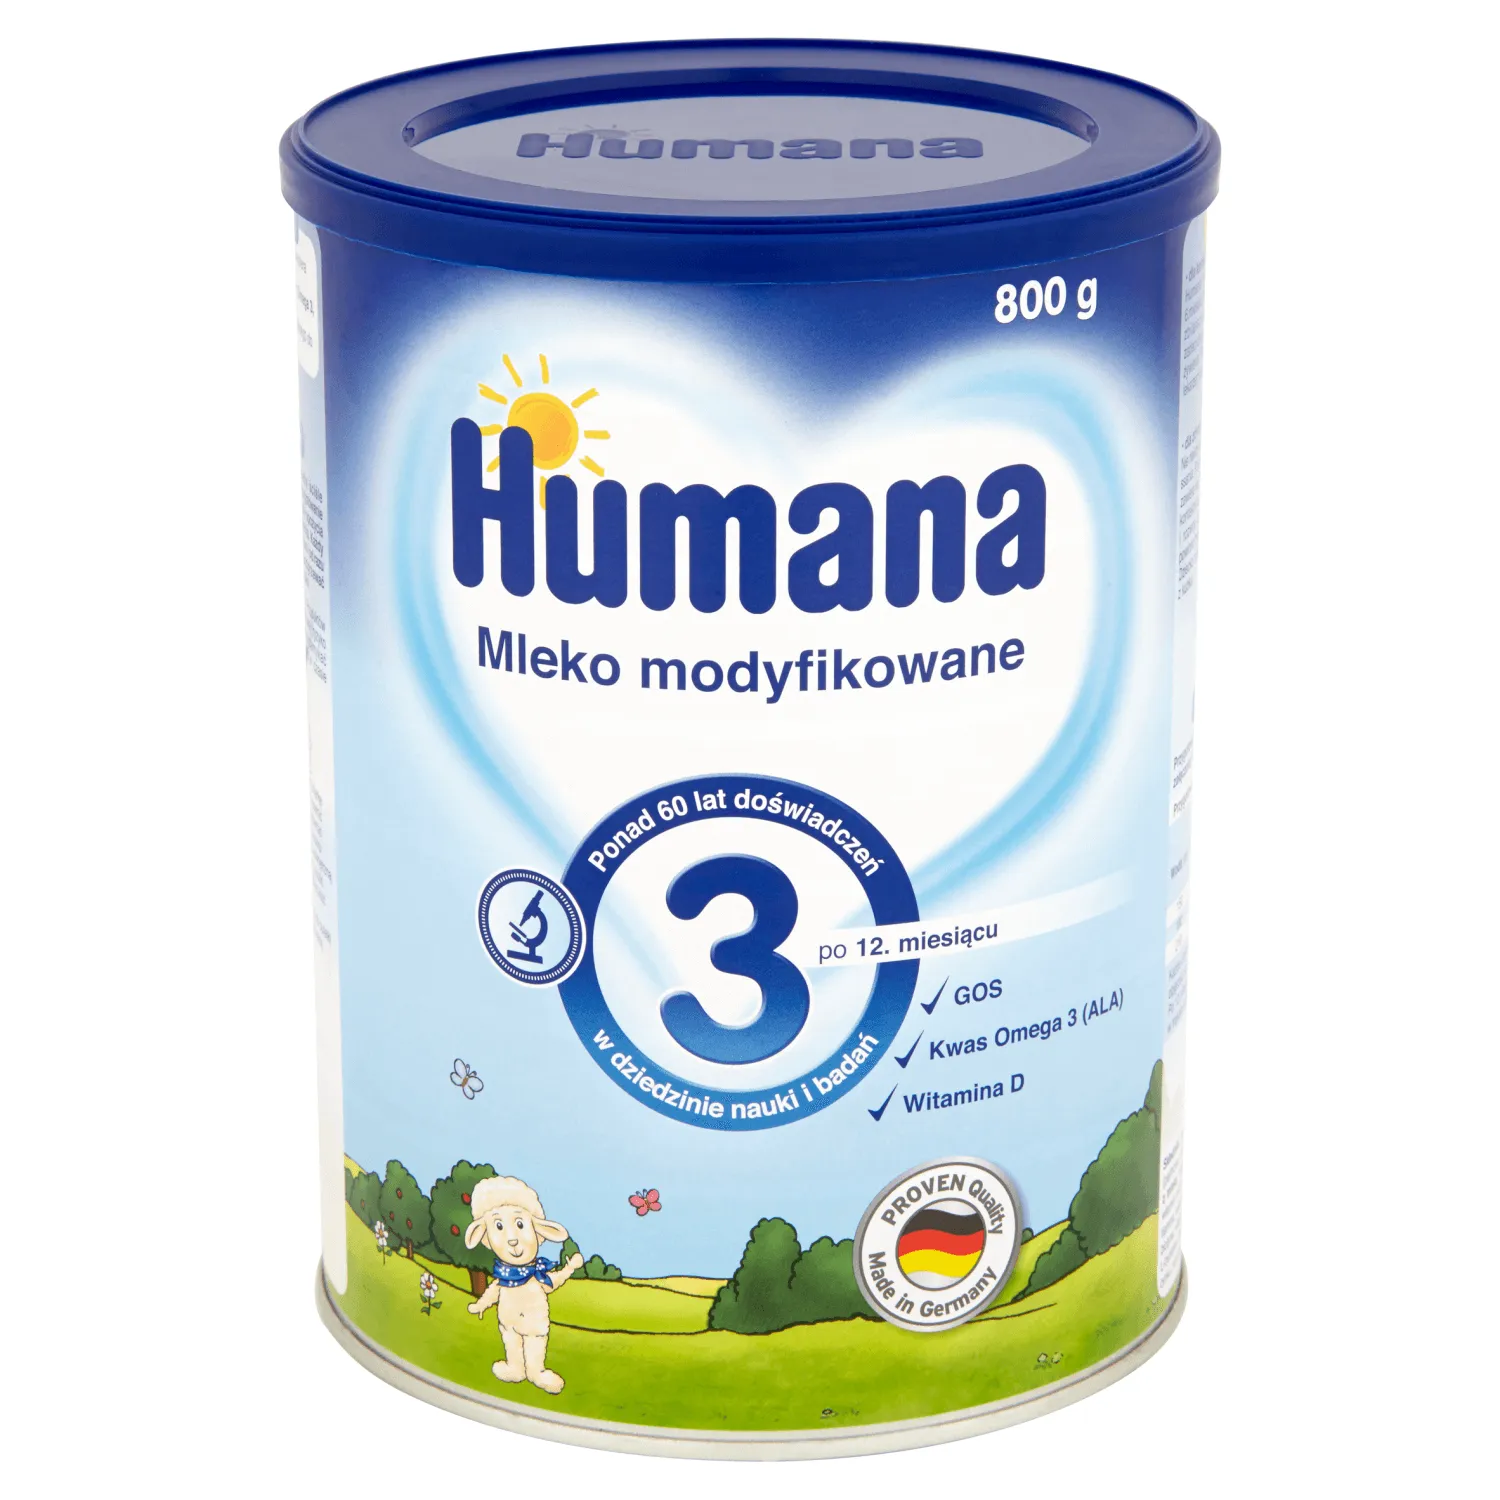 Humana 3 mleko modyfikowane po 12. miesiącu, 800 g